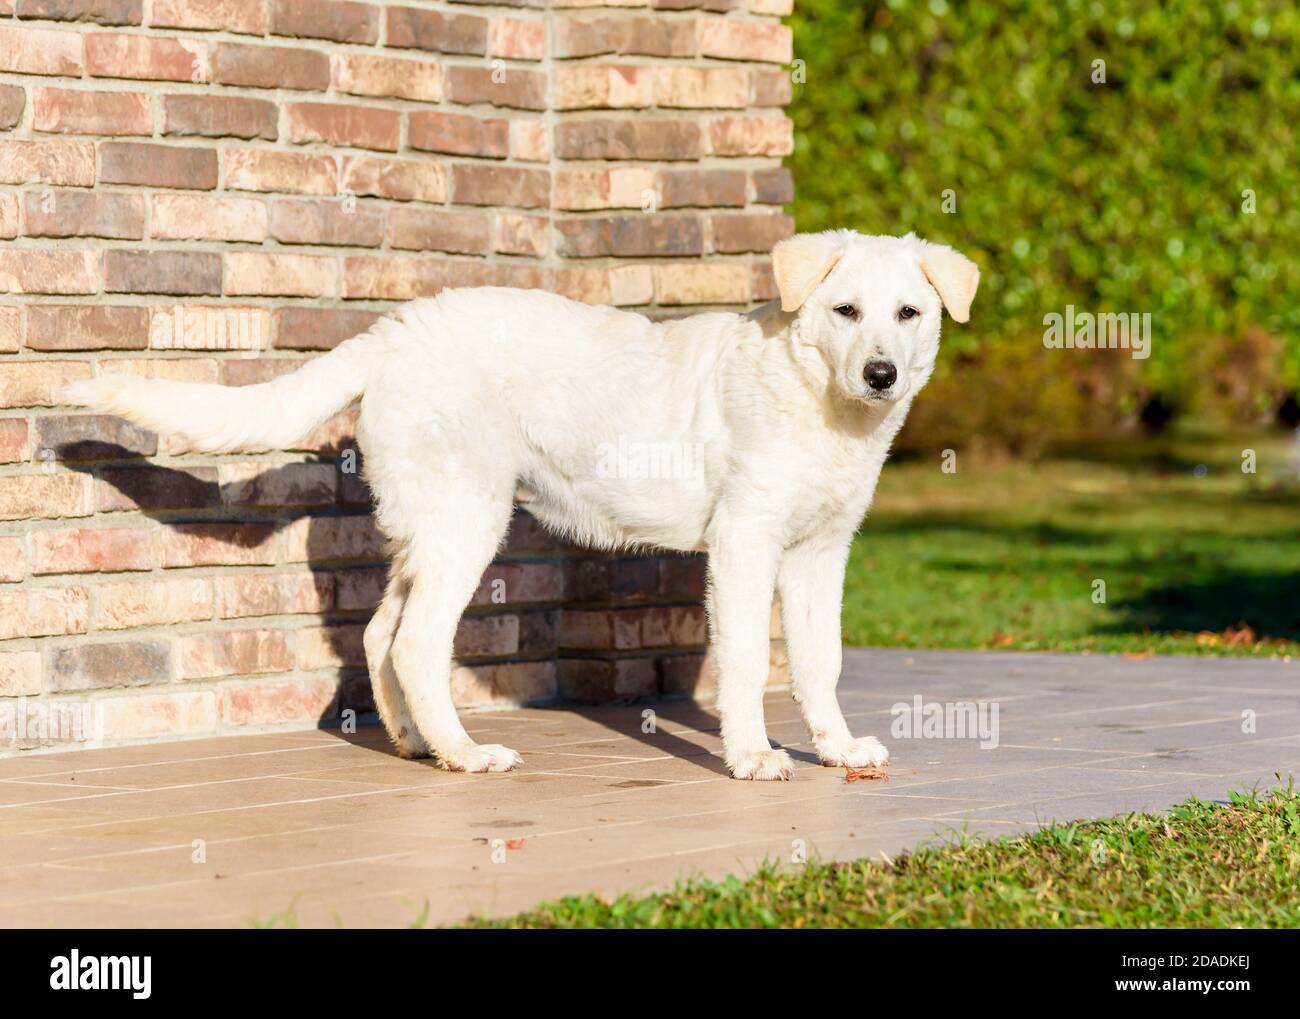 Mignon chien de chiot blanc, semblable Labrador, debout près du mur de briques, à l'extérieur dans le jardin. Banque D'Images